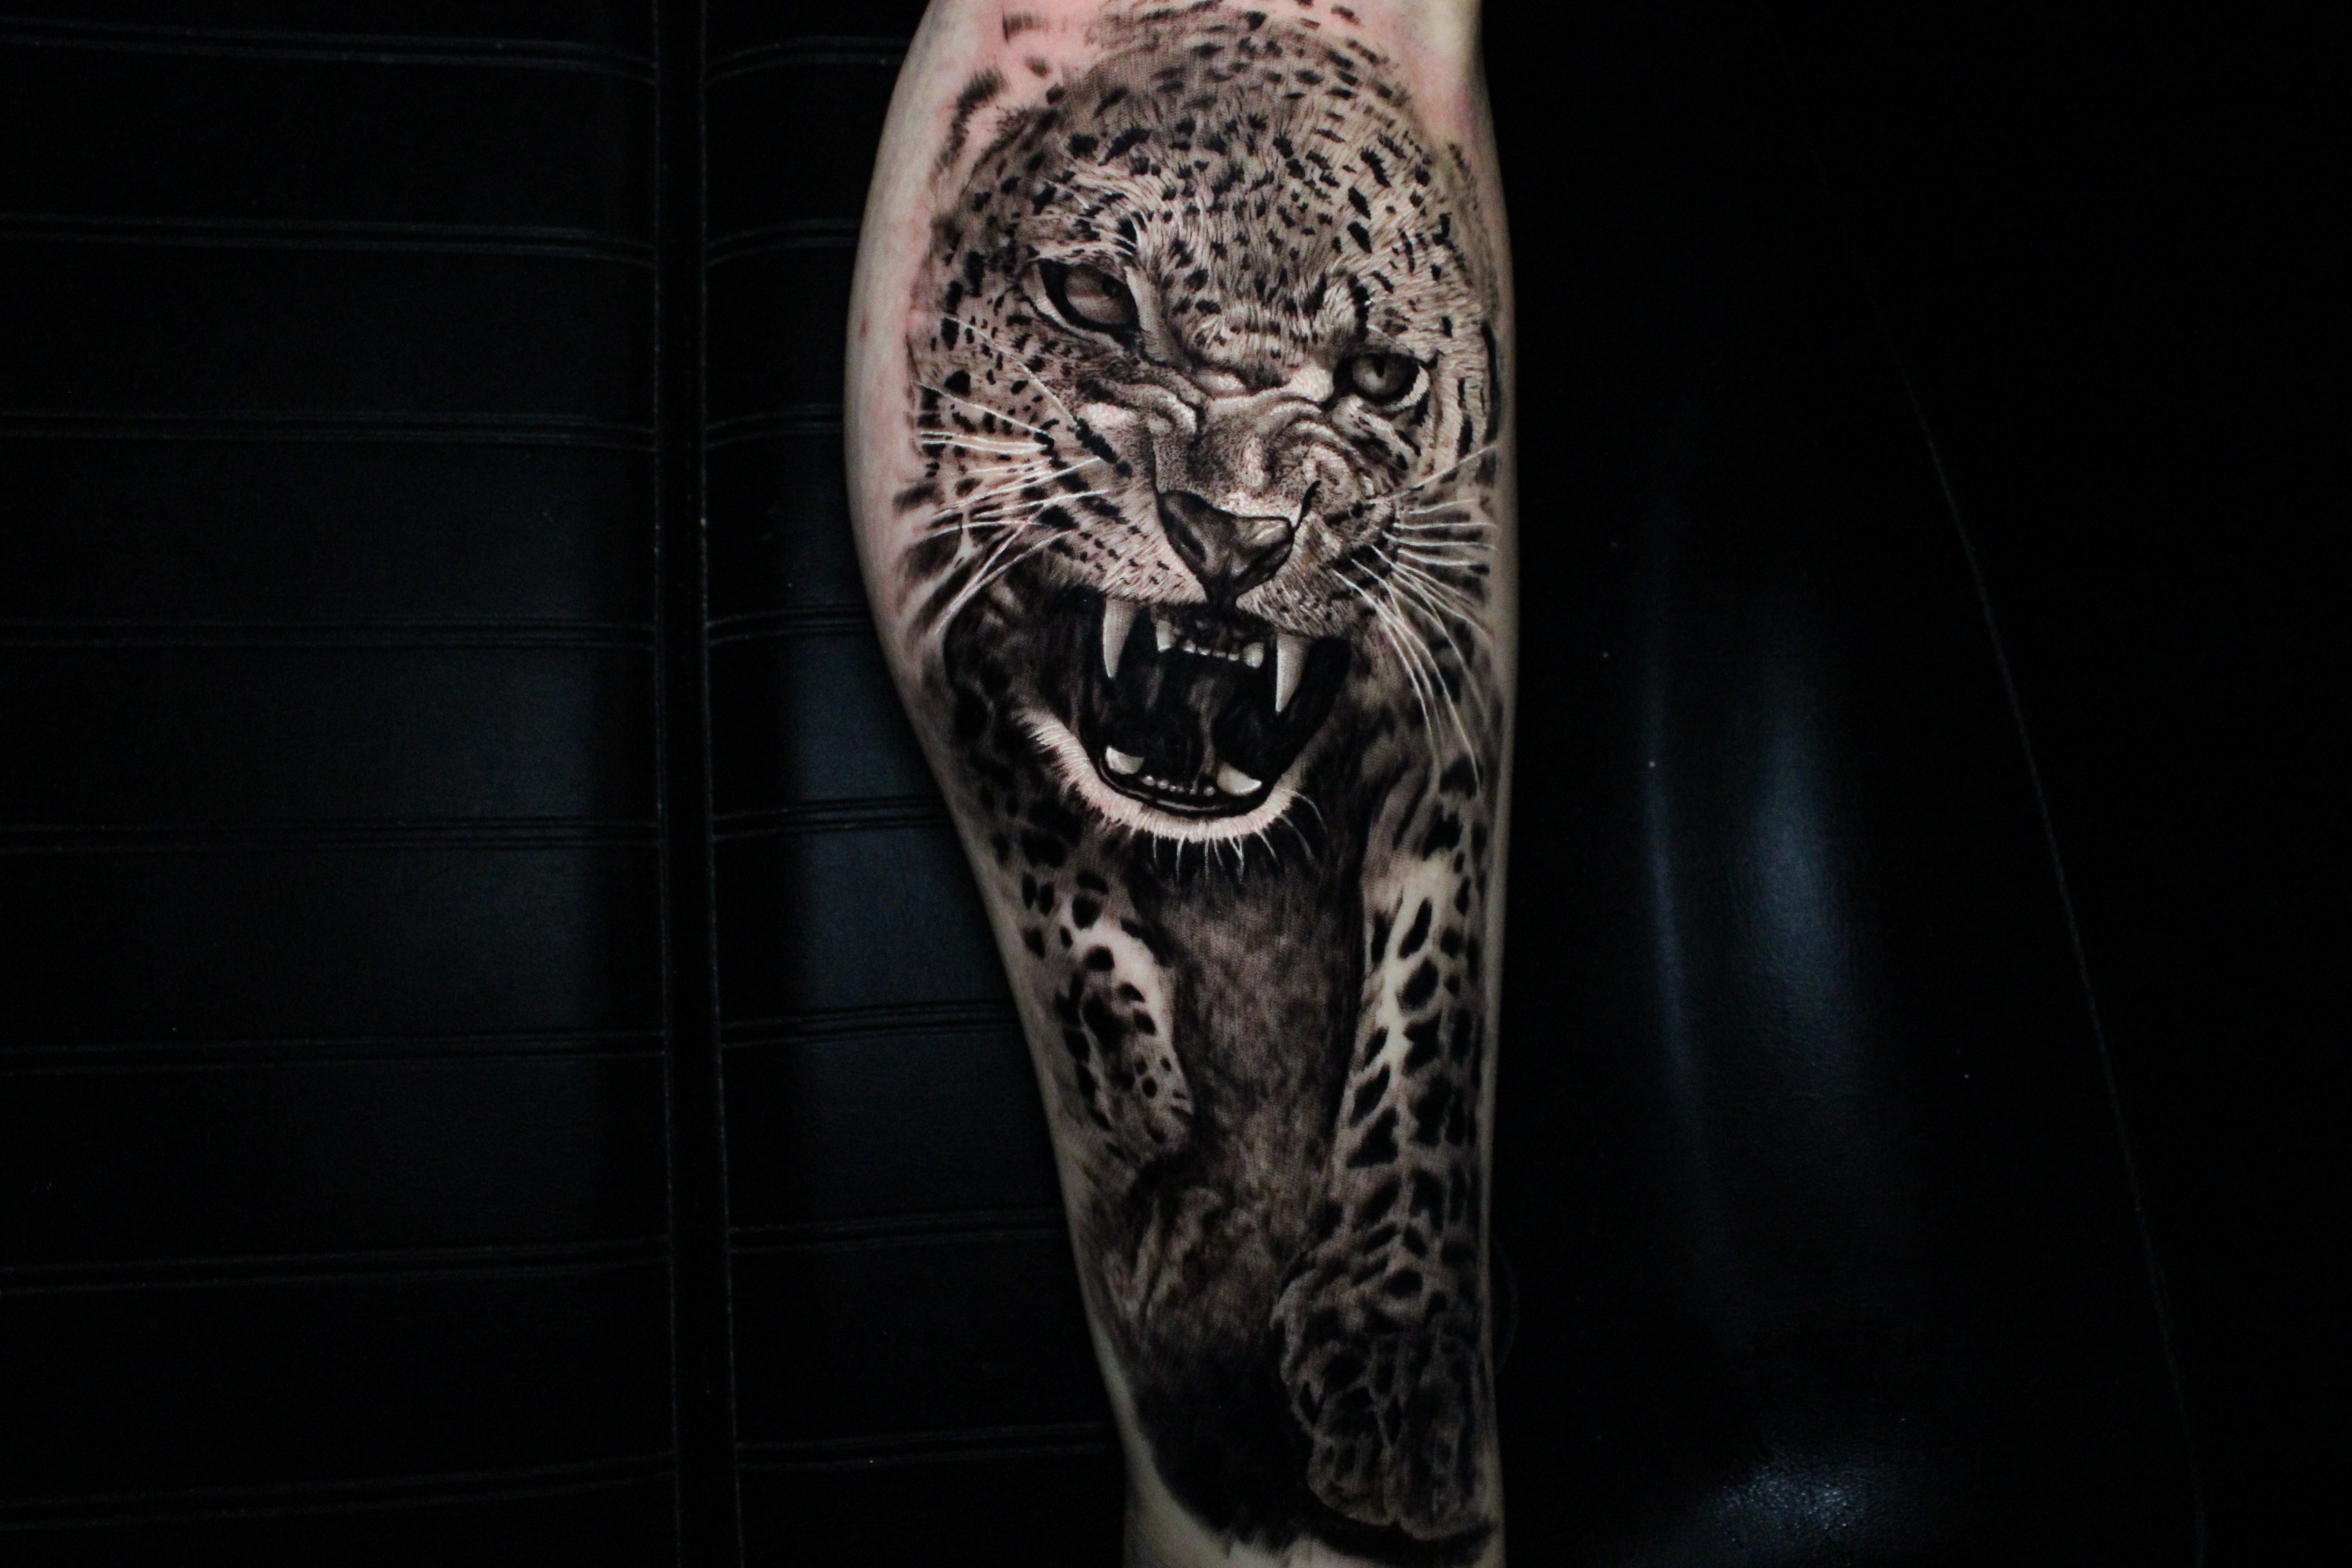 Tattoos - Kitty kat  - 141448